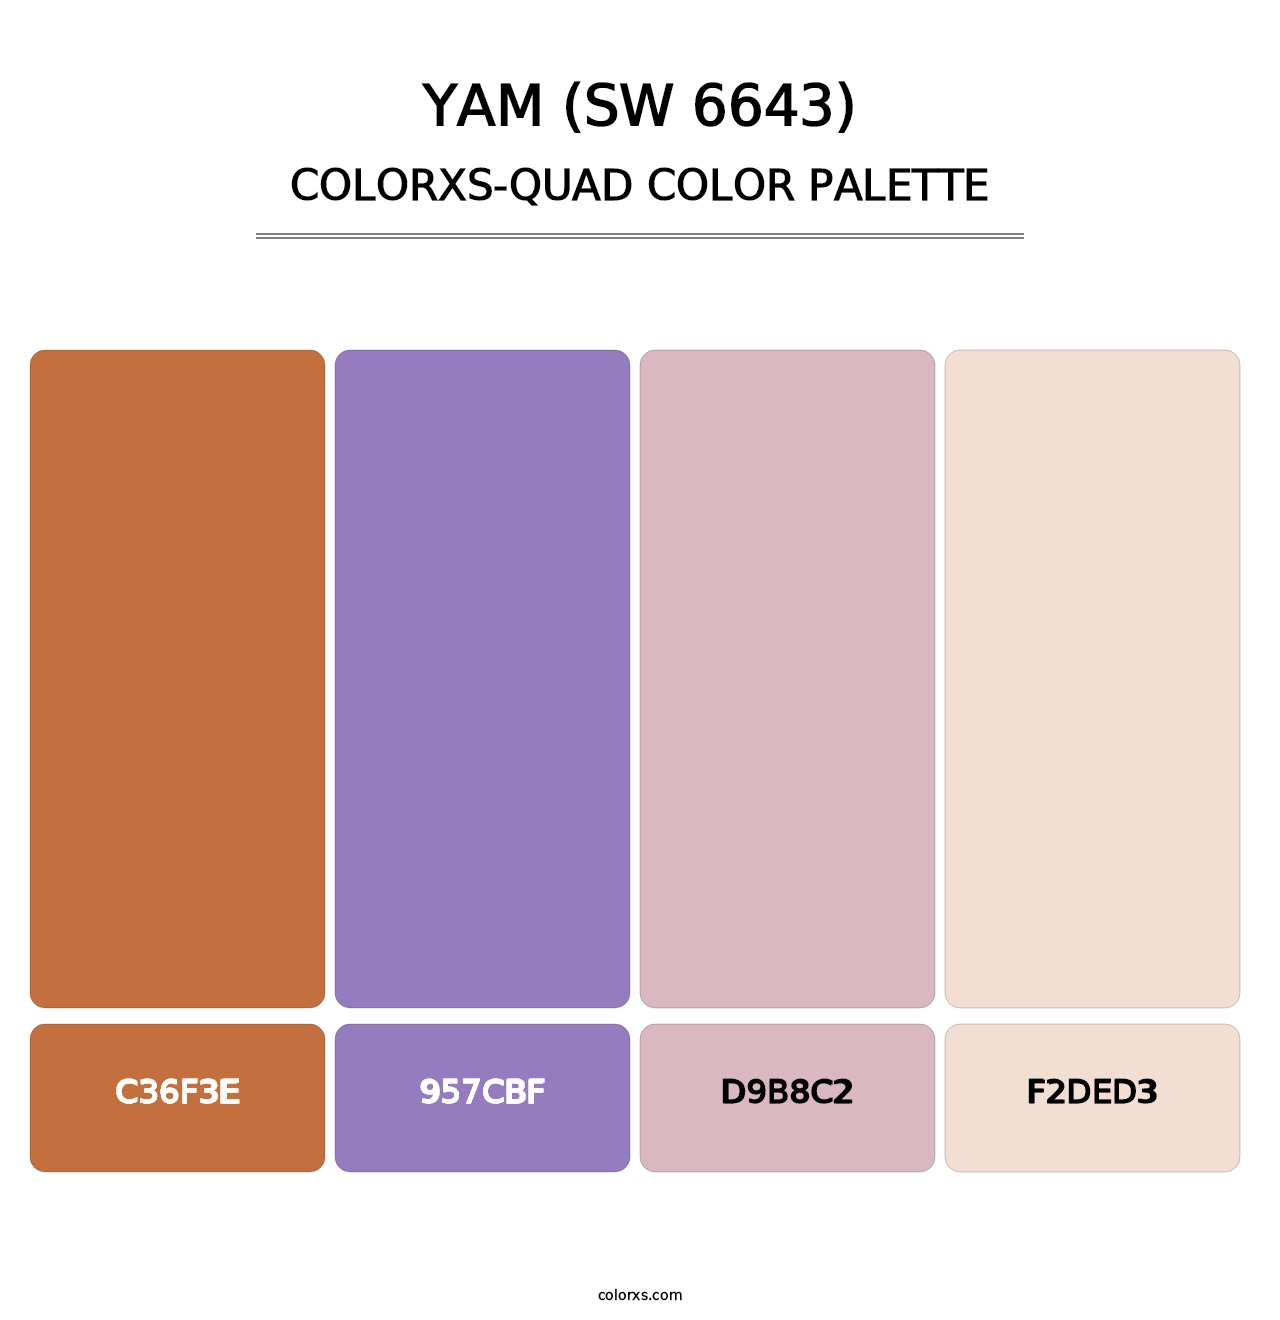 Yam (SW 6643) - Colorxs Quad Palette